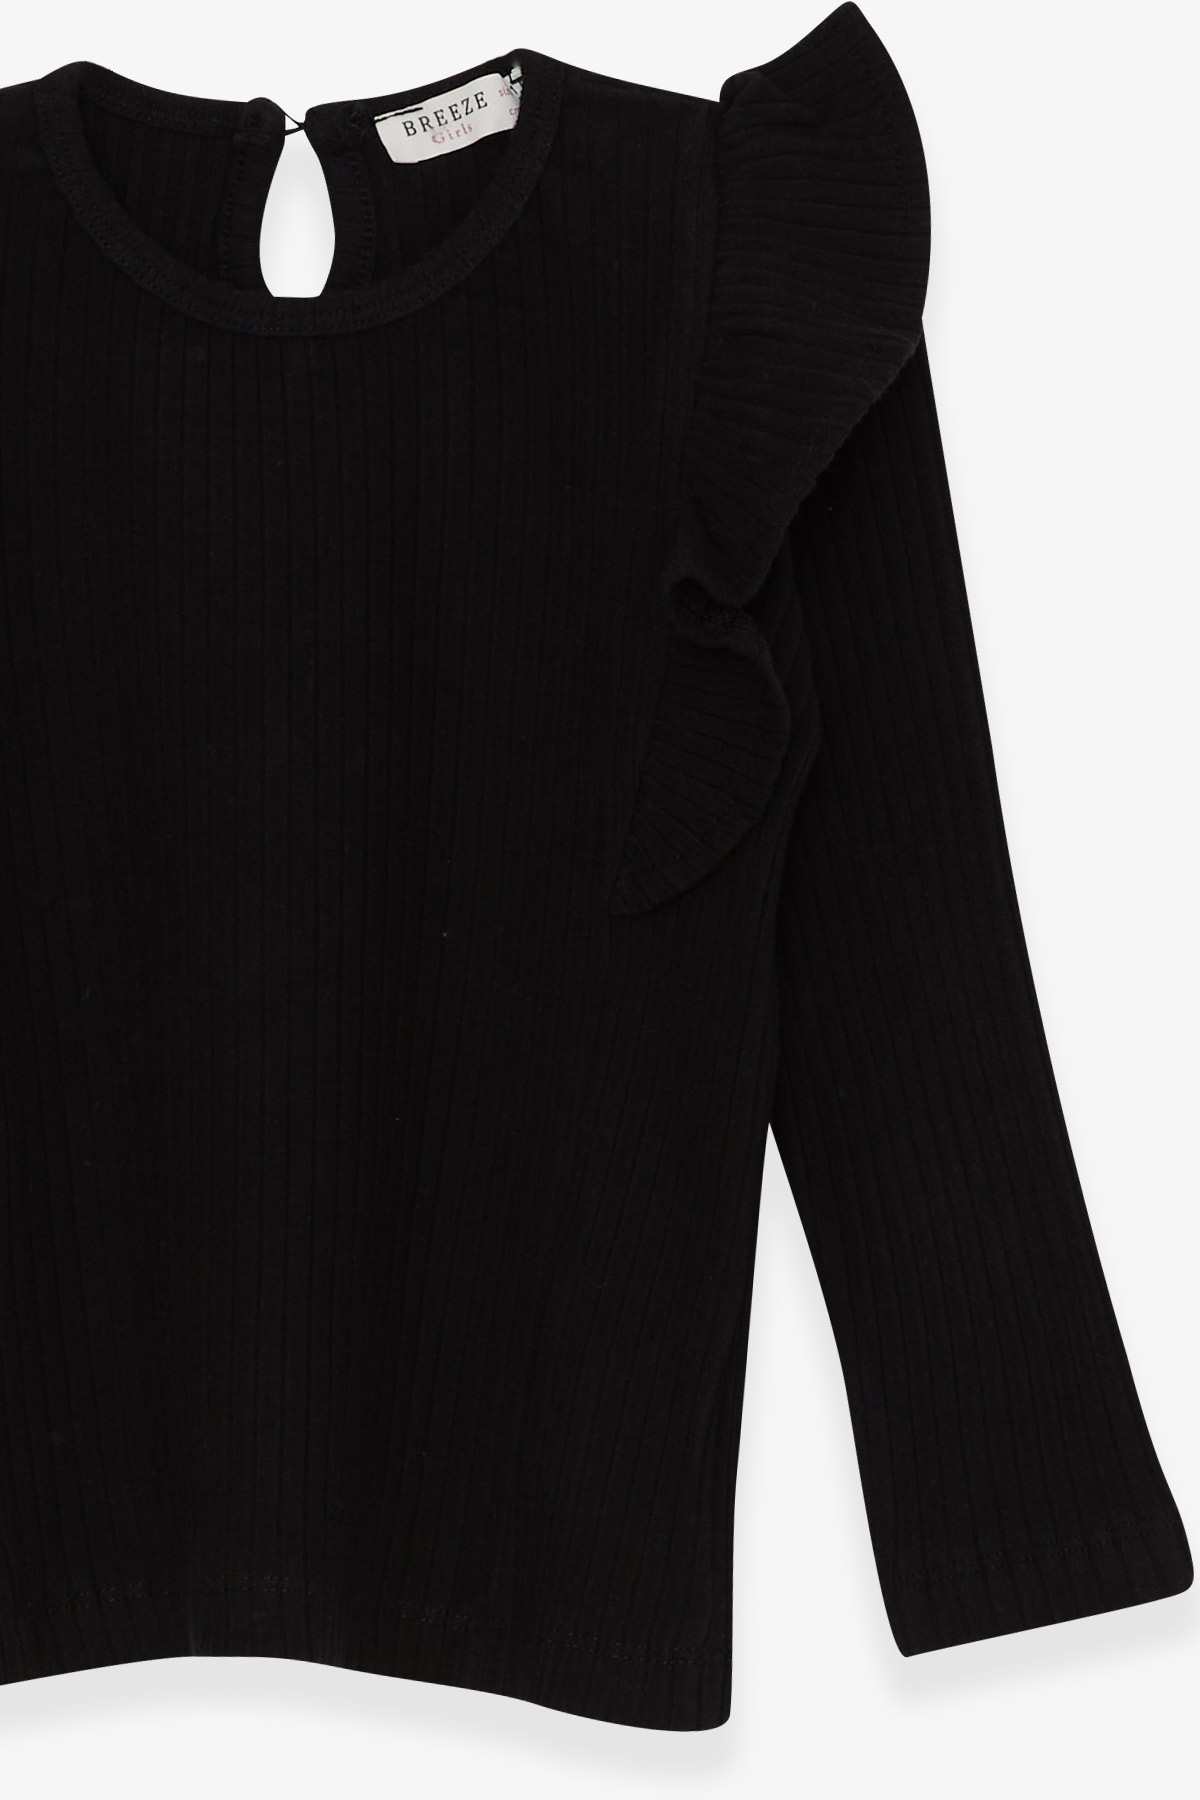 Kız Çocuk Uzun Kollu Bluz Omuzu Fırfırlı Siyah 1.5-5 Yaş - Pamuklu Modeller  | Breeze